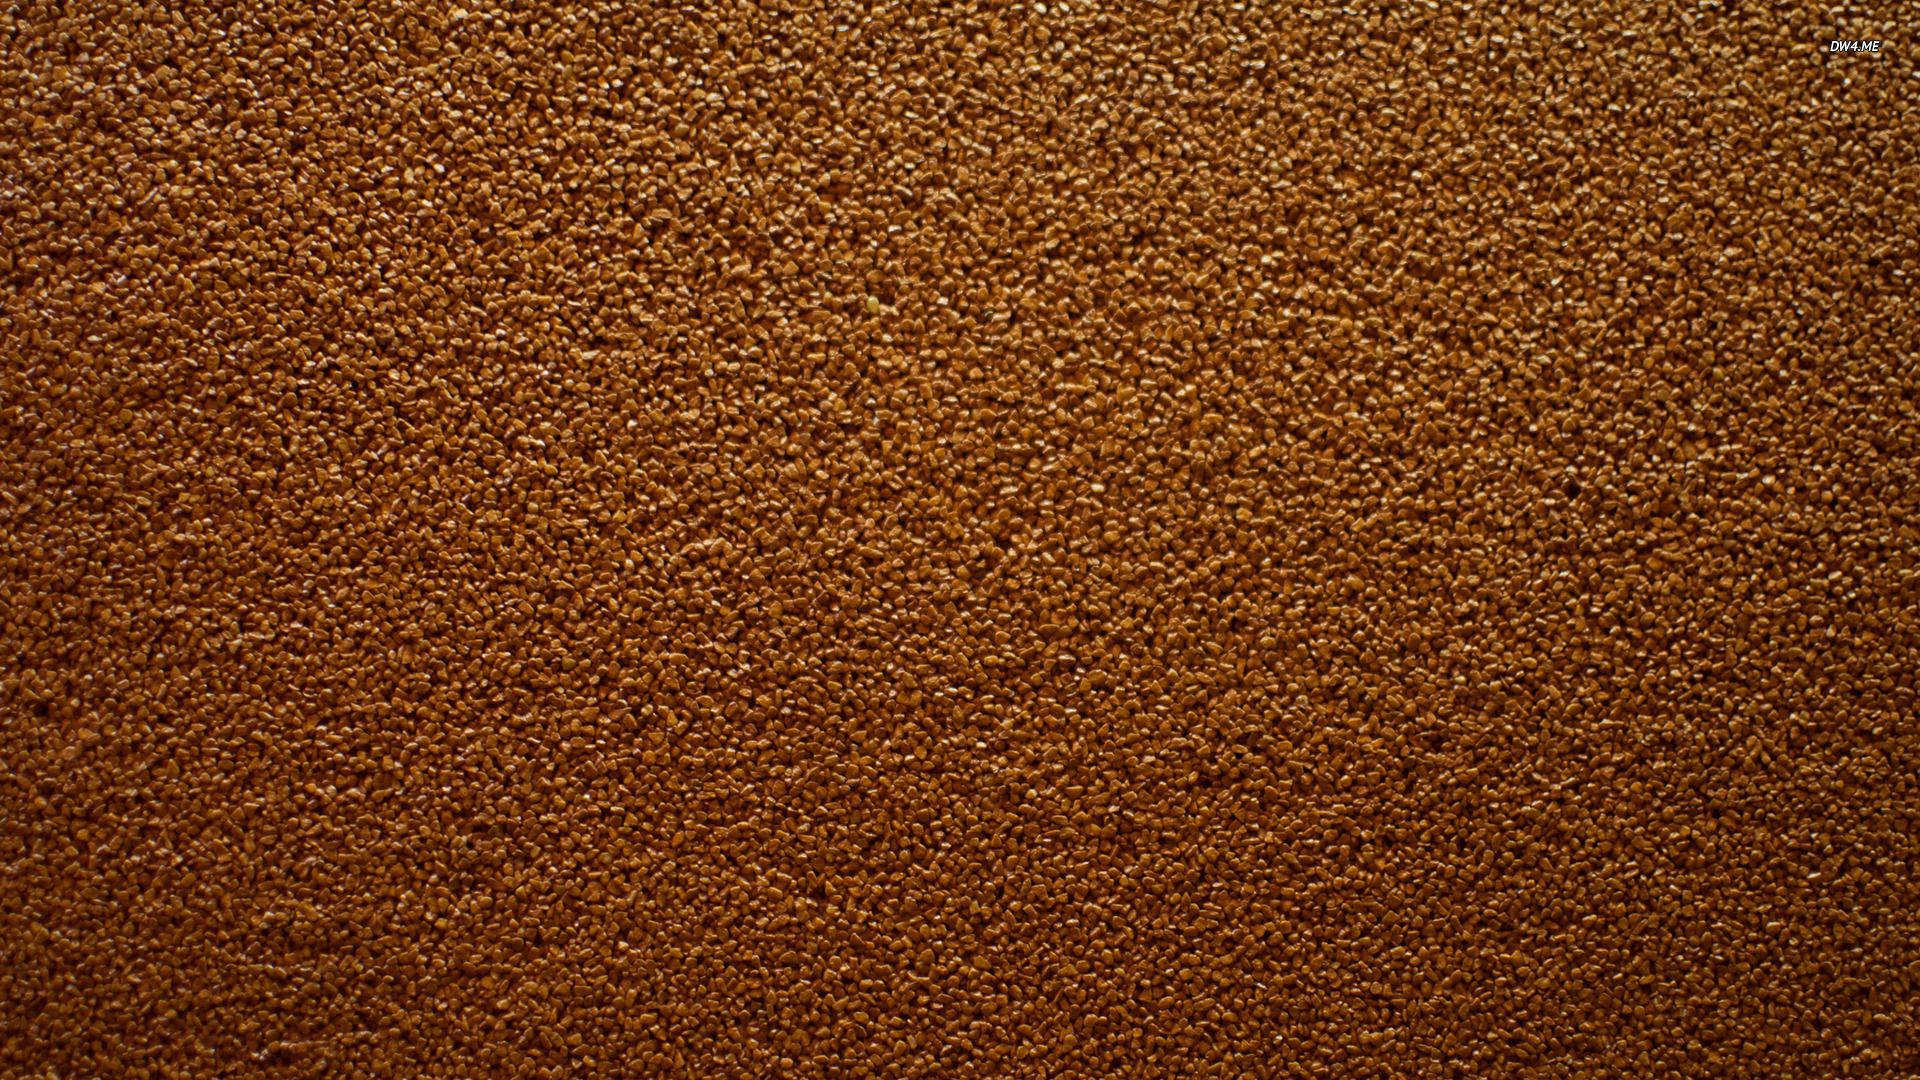 Brown 1920X1080 wallpaper